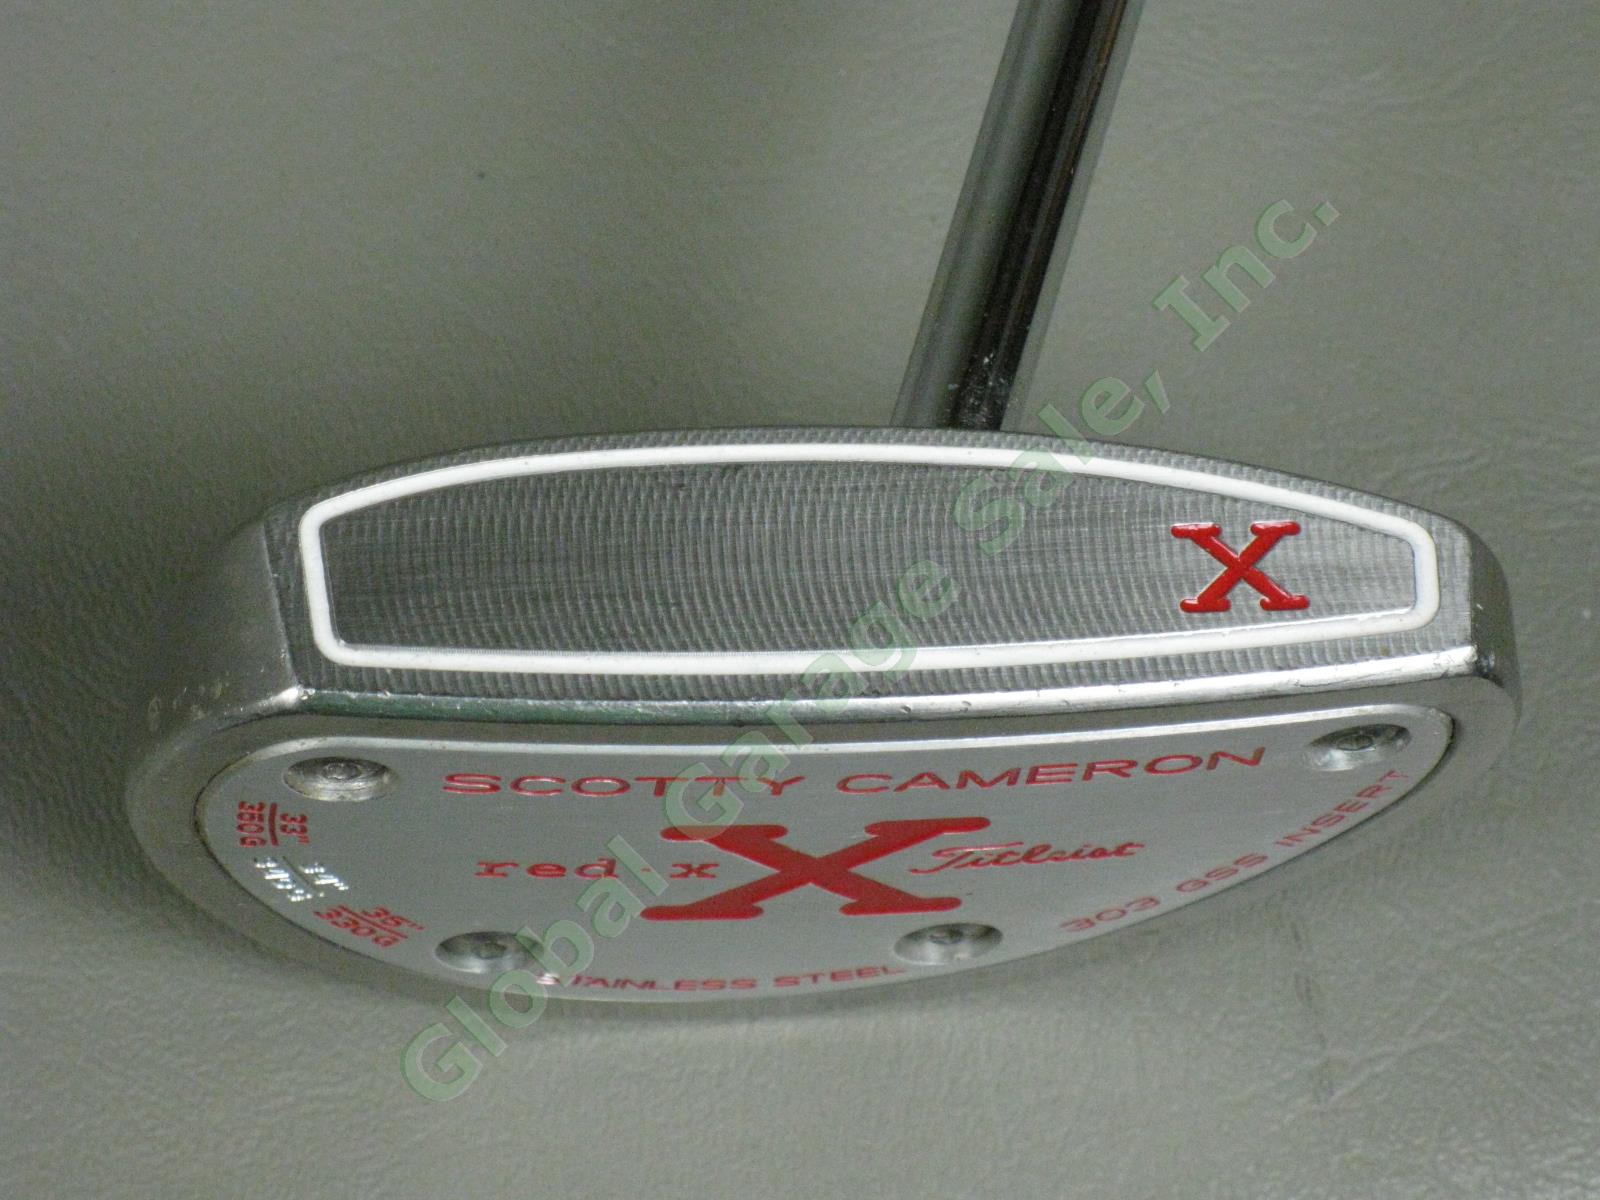 Titleist Scotty Cameron 34" 340g 3 Dot Red X X2 Putter 303 GSS Insert Golf Club 2